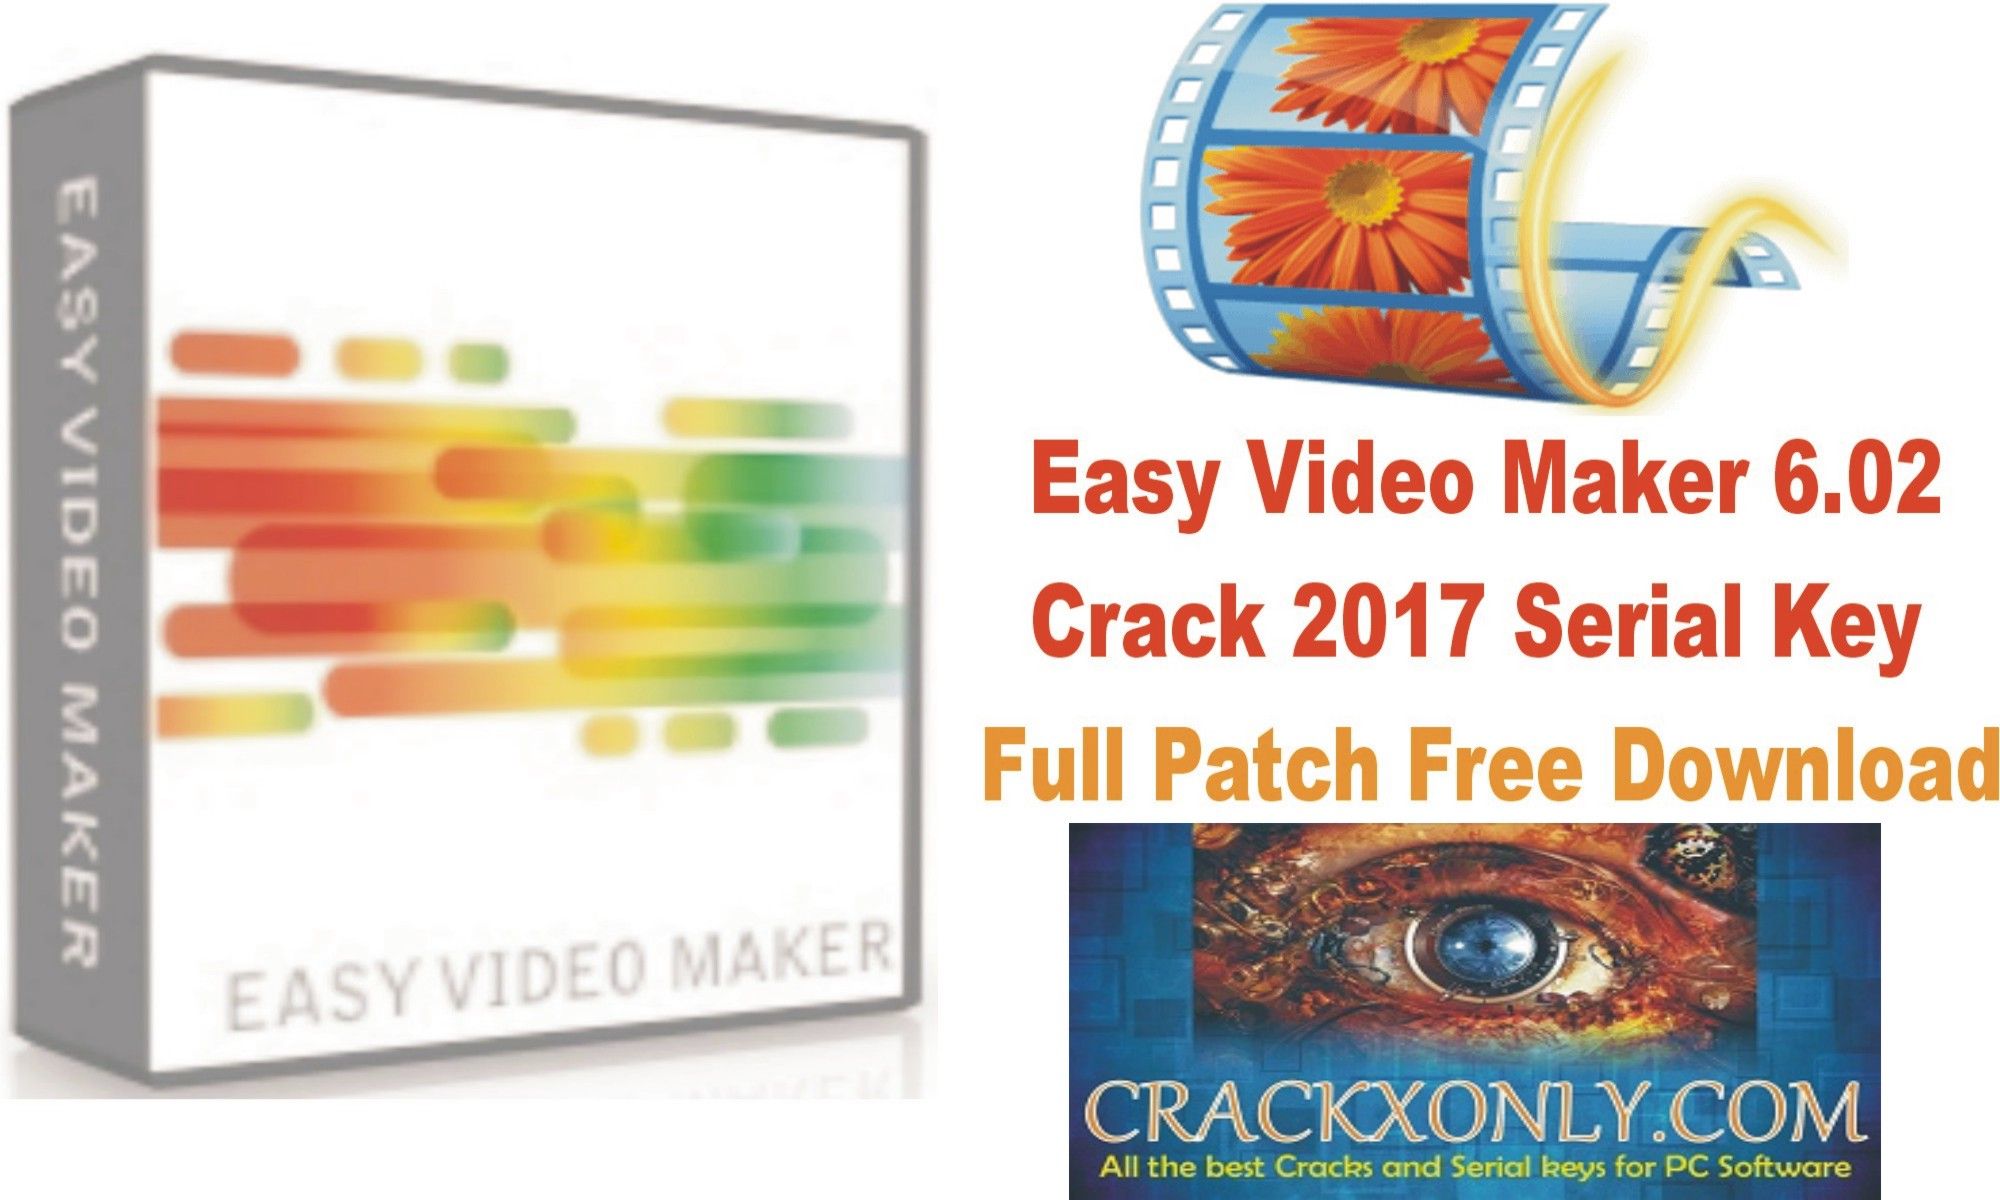 Easy Video Maker Serial Key